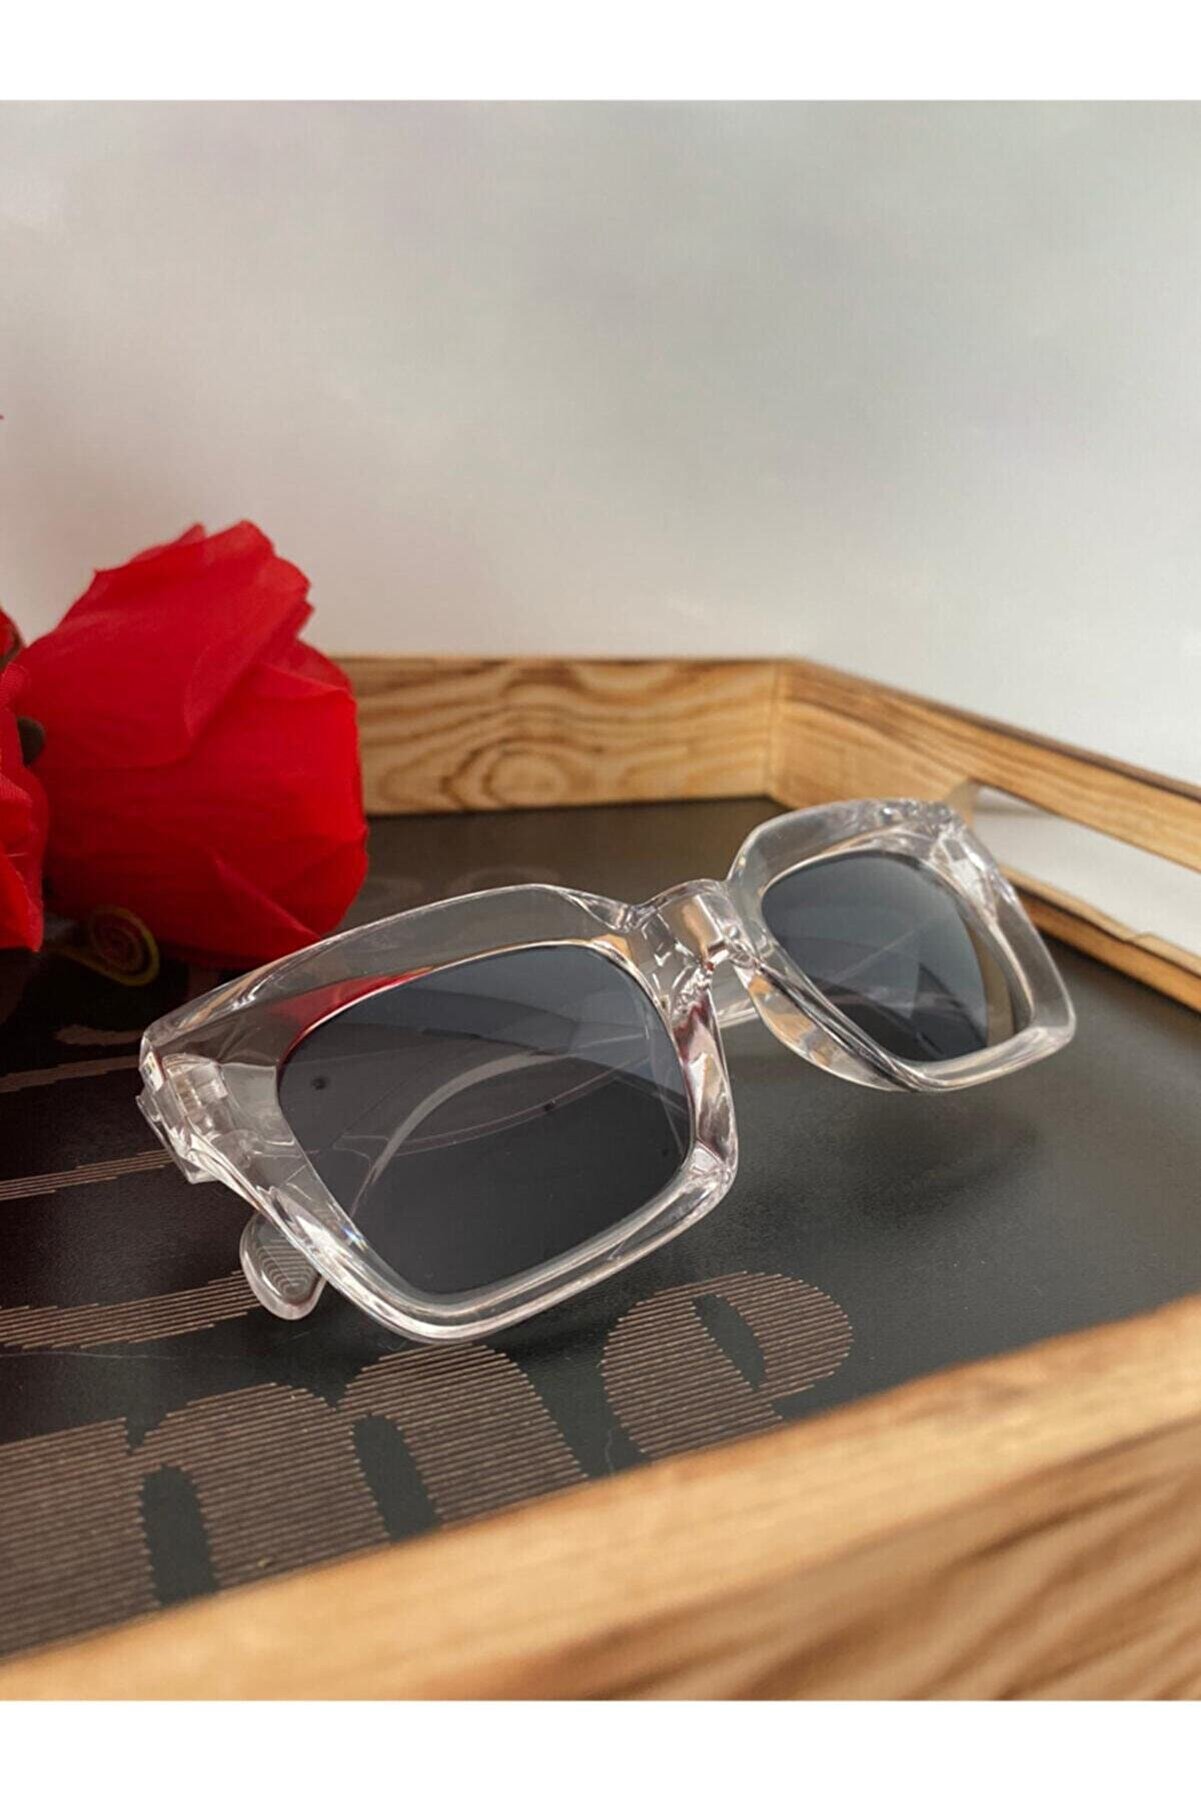 Mathilda Aksesuar Mia Kalın Çerçeveli Tasarım Gözlük Şeffaf Çerçeve Siyah Cam